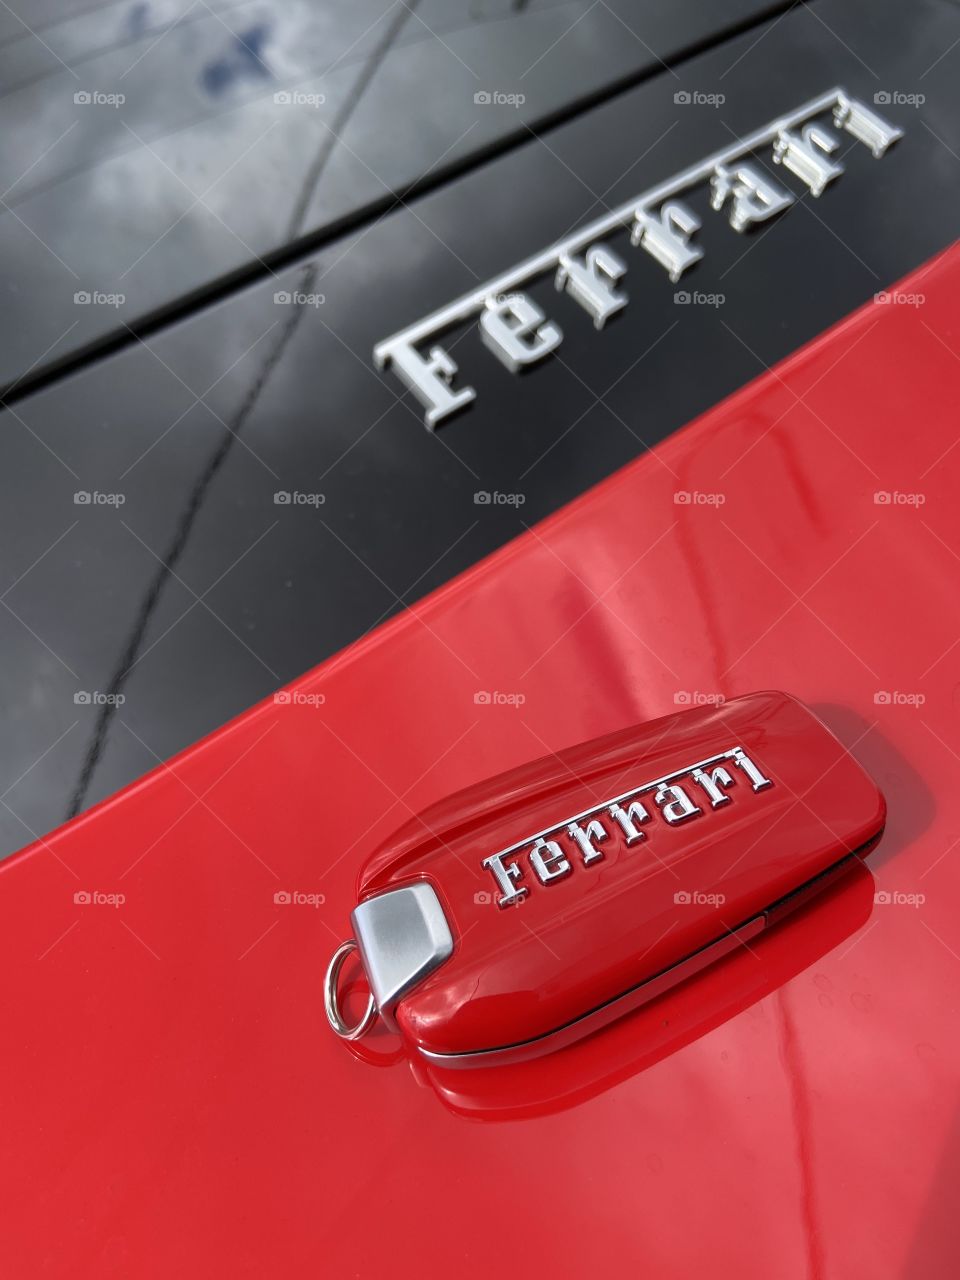 Ferrari babe